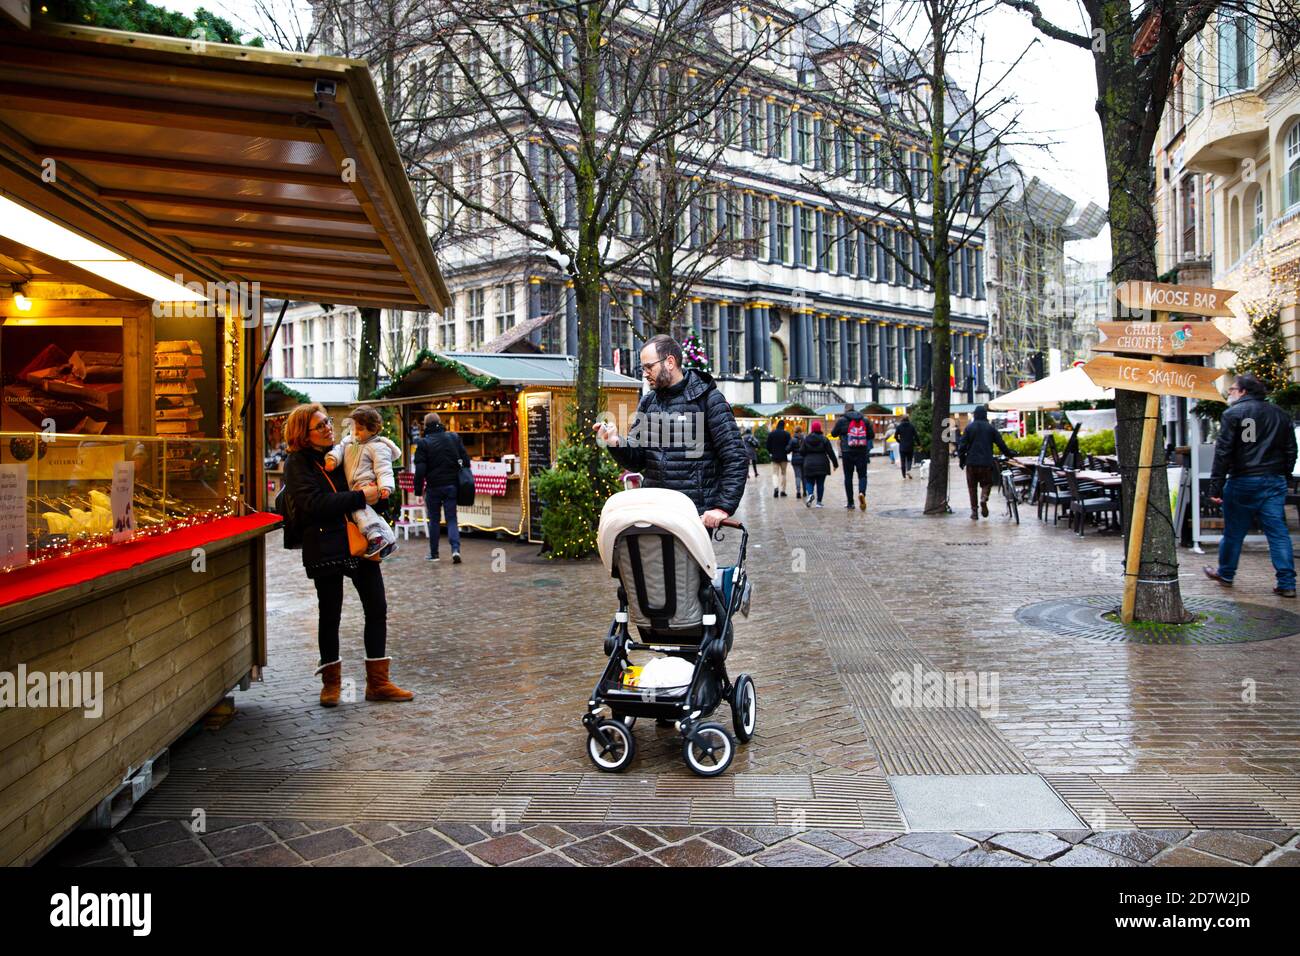 16 décembre 2019, Gand, Belgique. Les personnes avec des familles fréquentent le marché de Noël. Banque D'Images